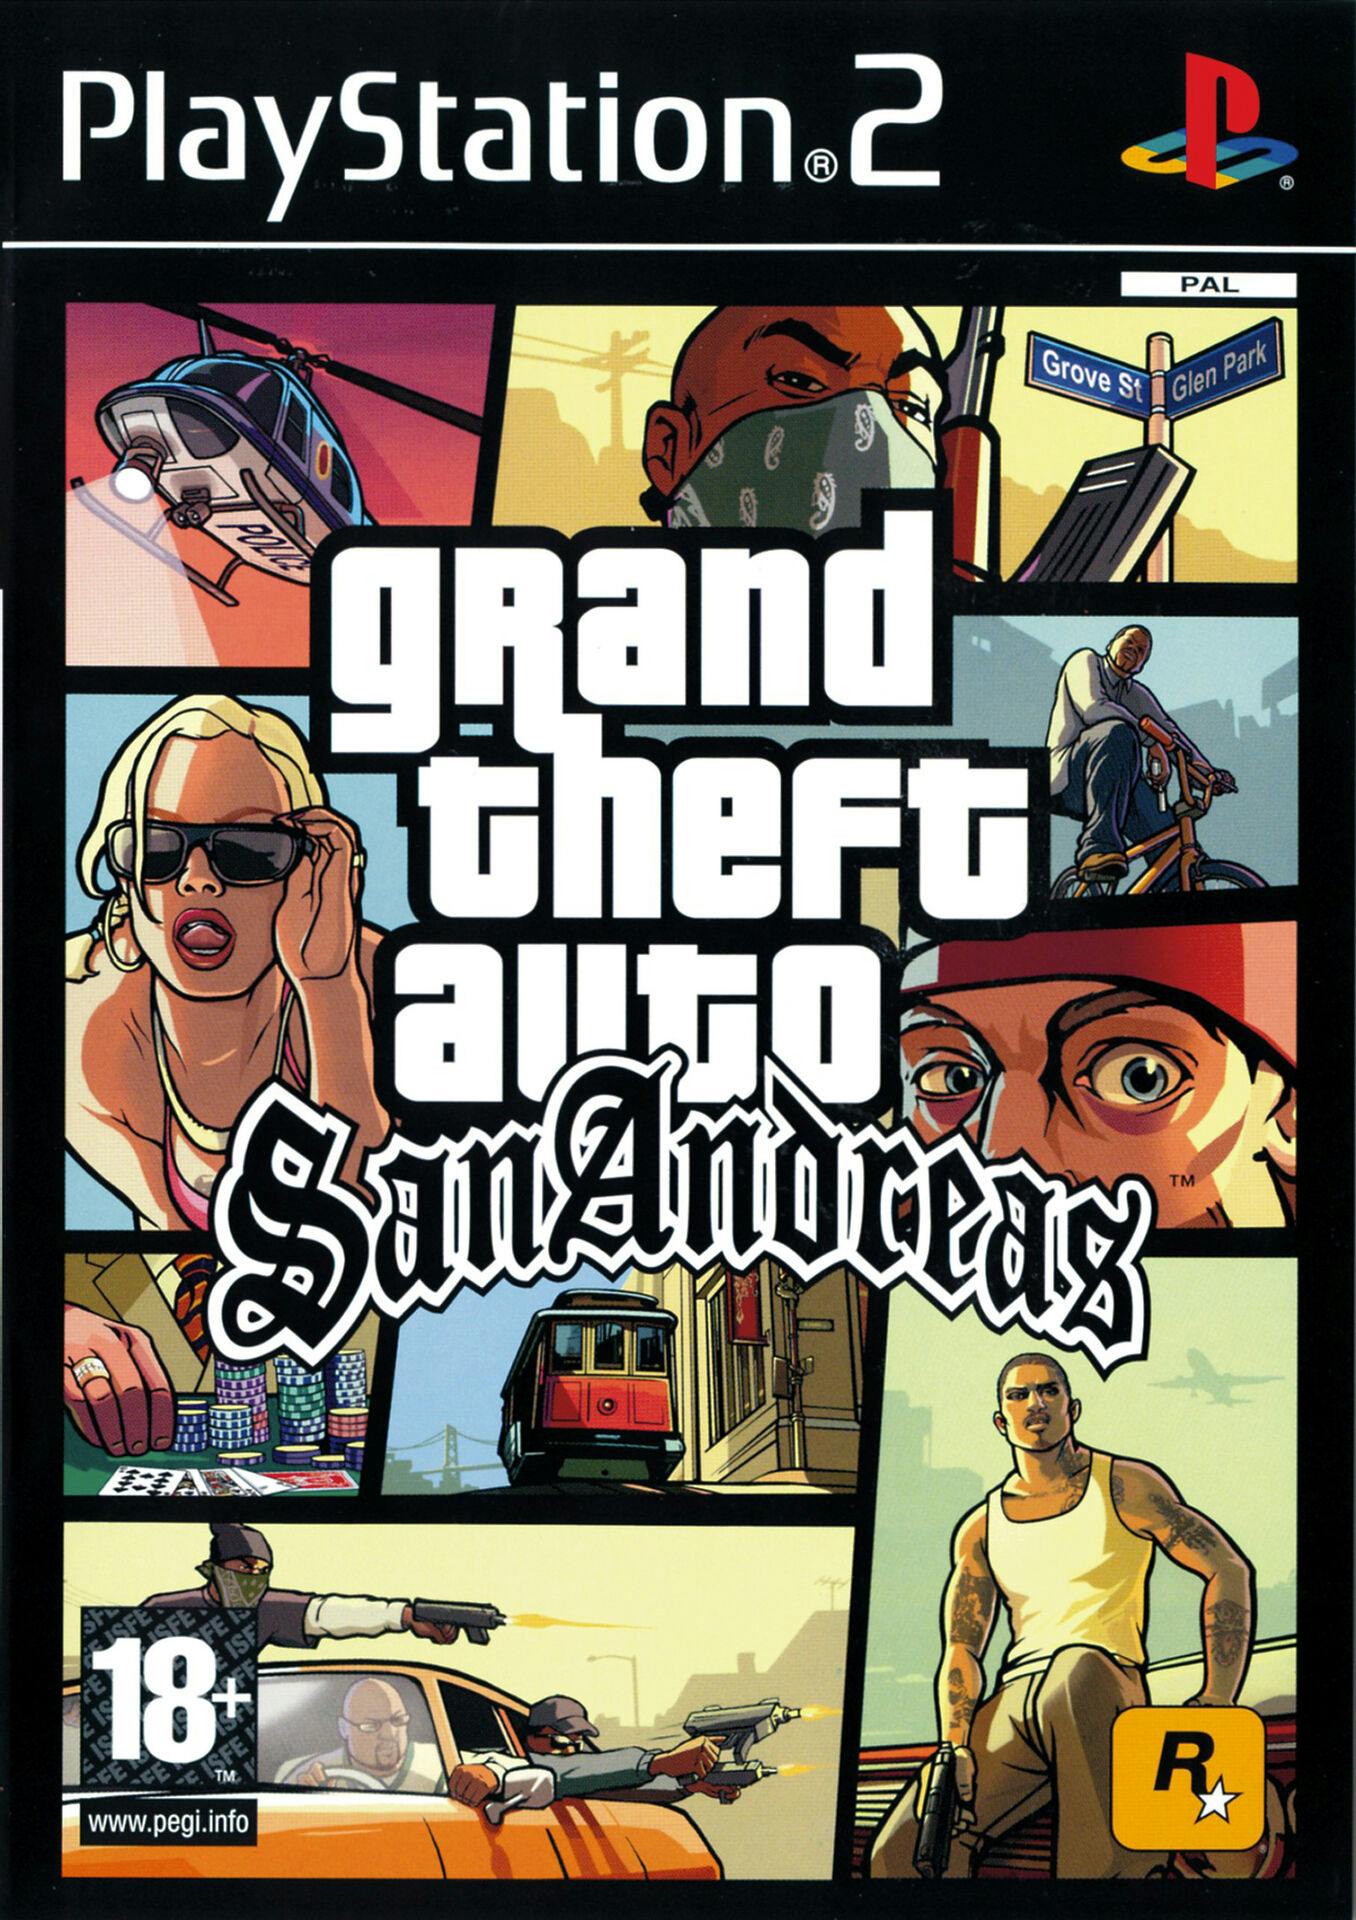 Mange vil nok især huske det legendariske "GTA San Andreas", hvor man følger CJ i Rockstar Games' version af Californien.